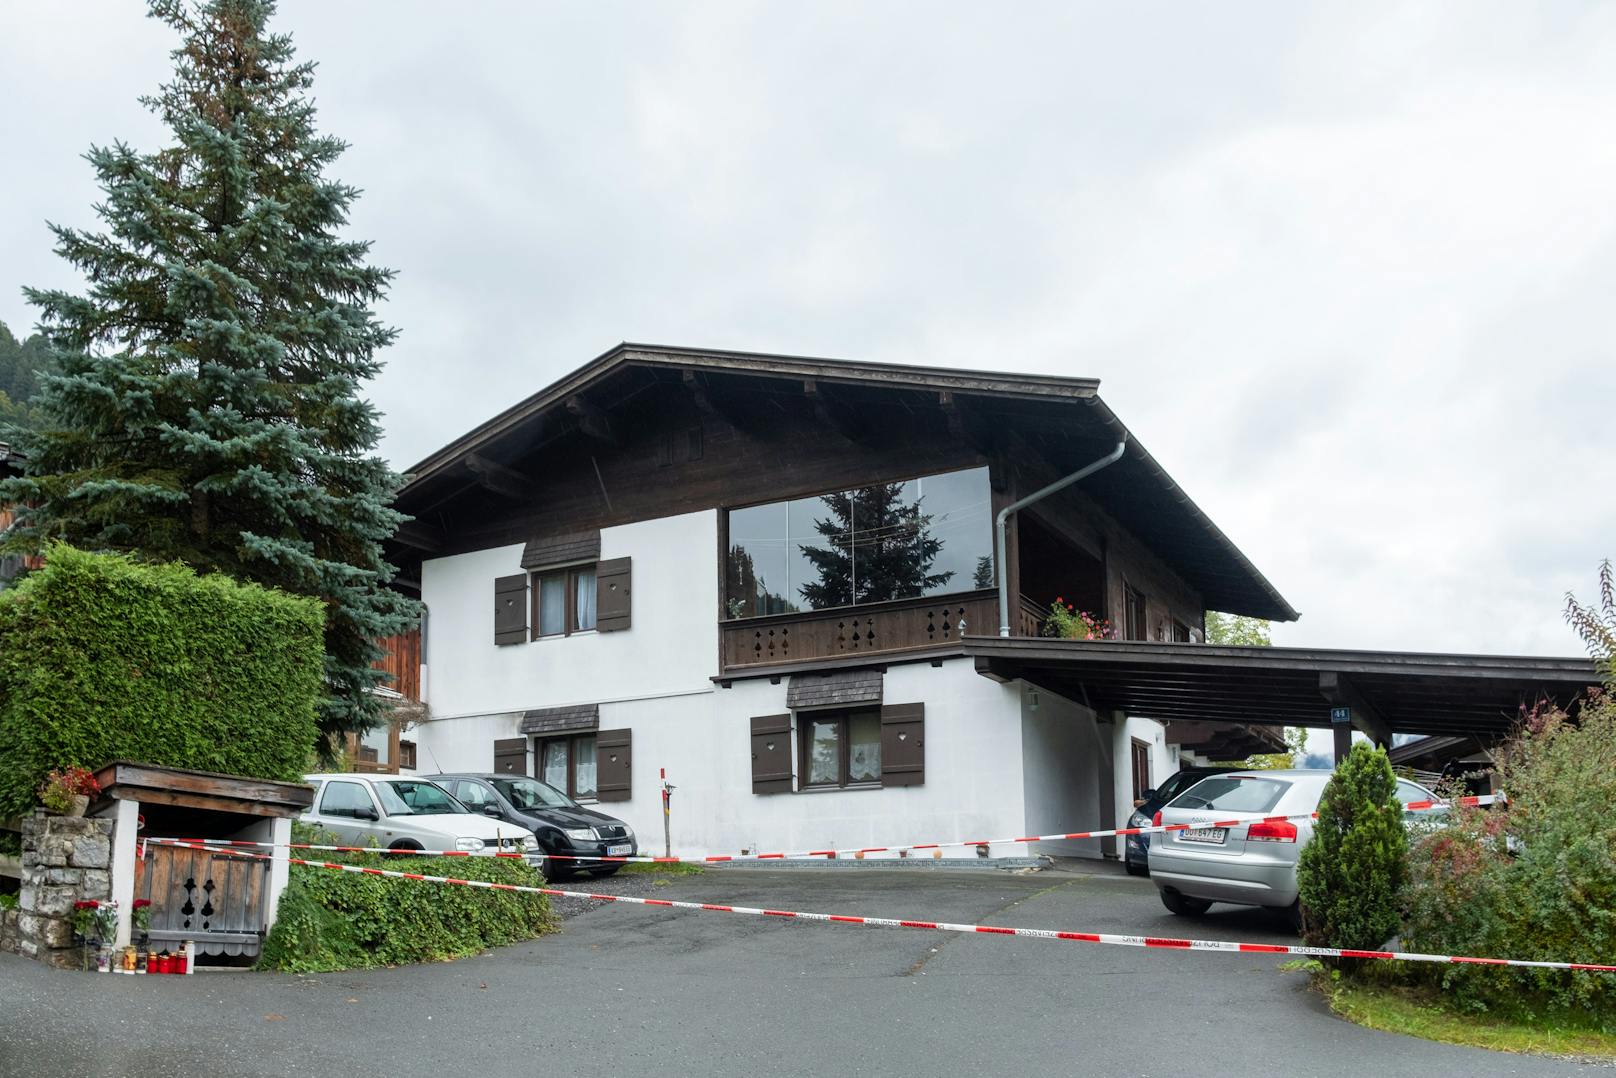 Andreas E., mittlerweile 26 Jahre alt, stellte sich nach der Bluttat selbst und befindet sich seitdem in Haft. Dem Tiroler wird zur Last gelegt, am 6. Oktober 2019 fünf Menschen hintereinander erschossen zu haben.